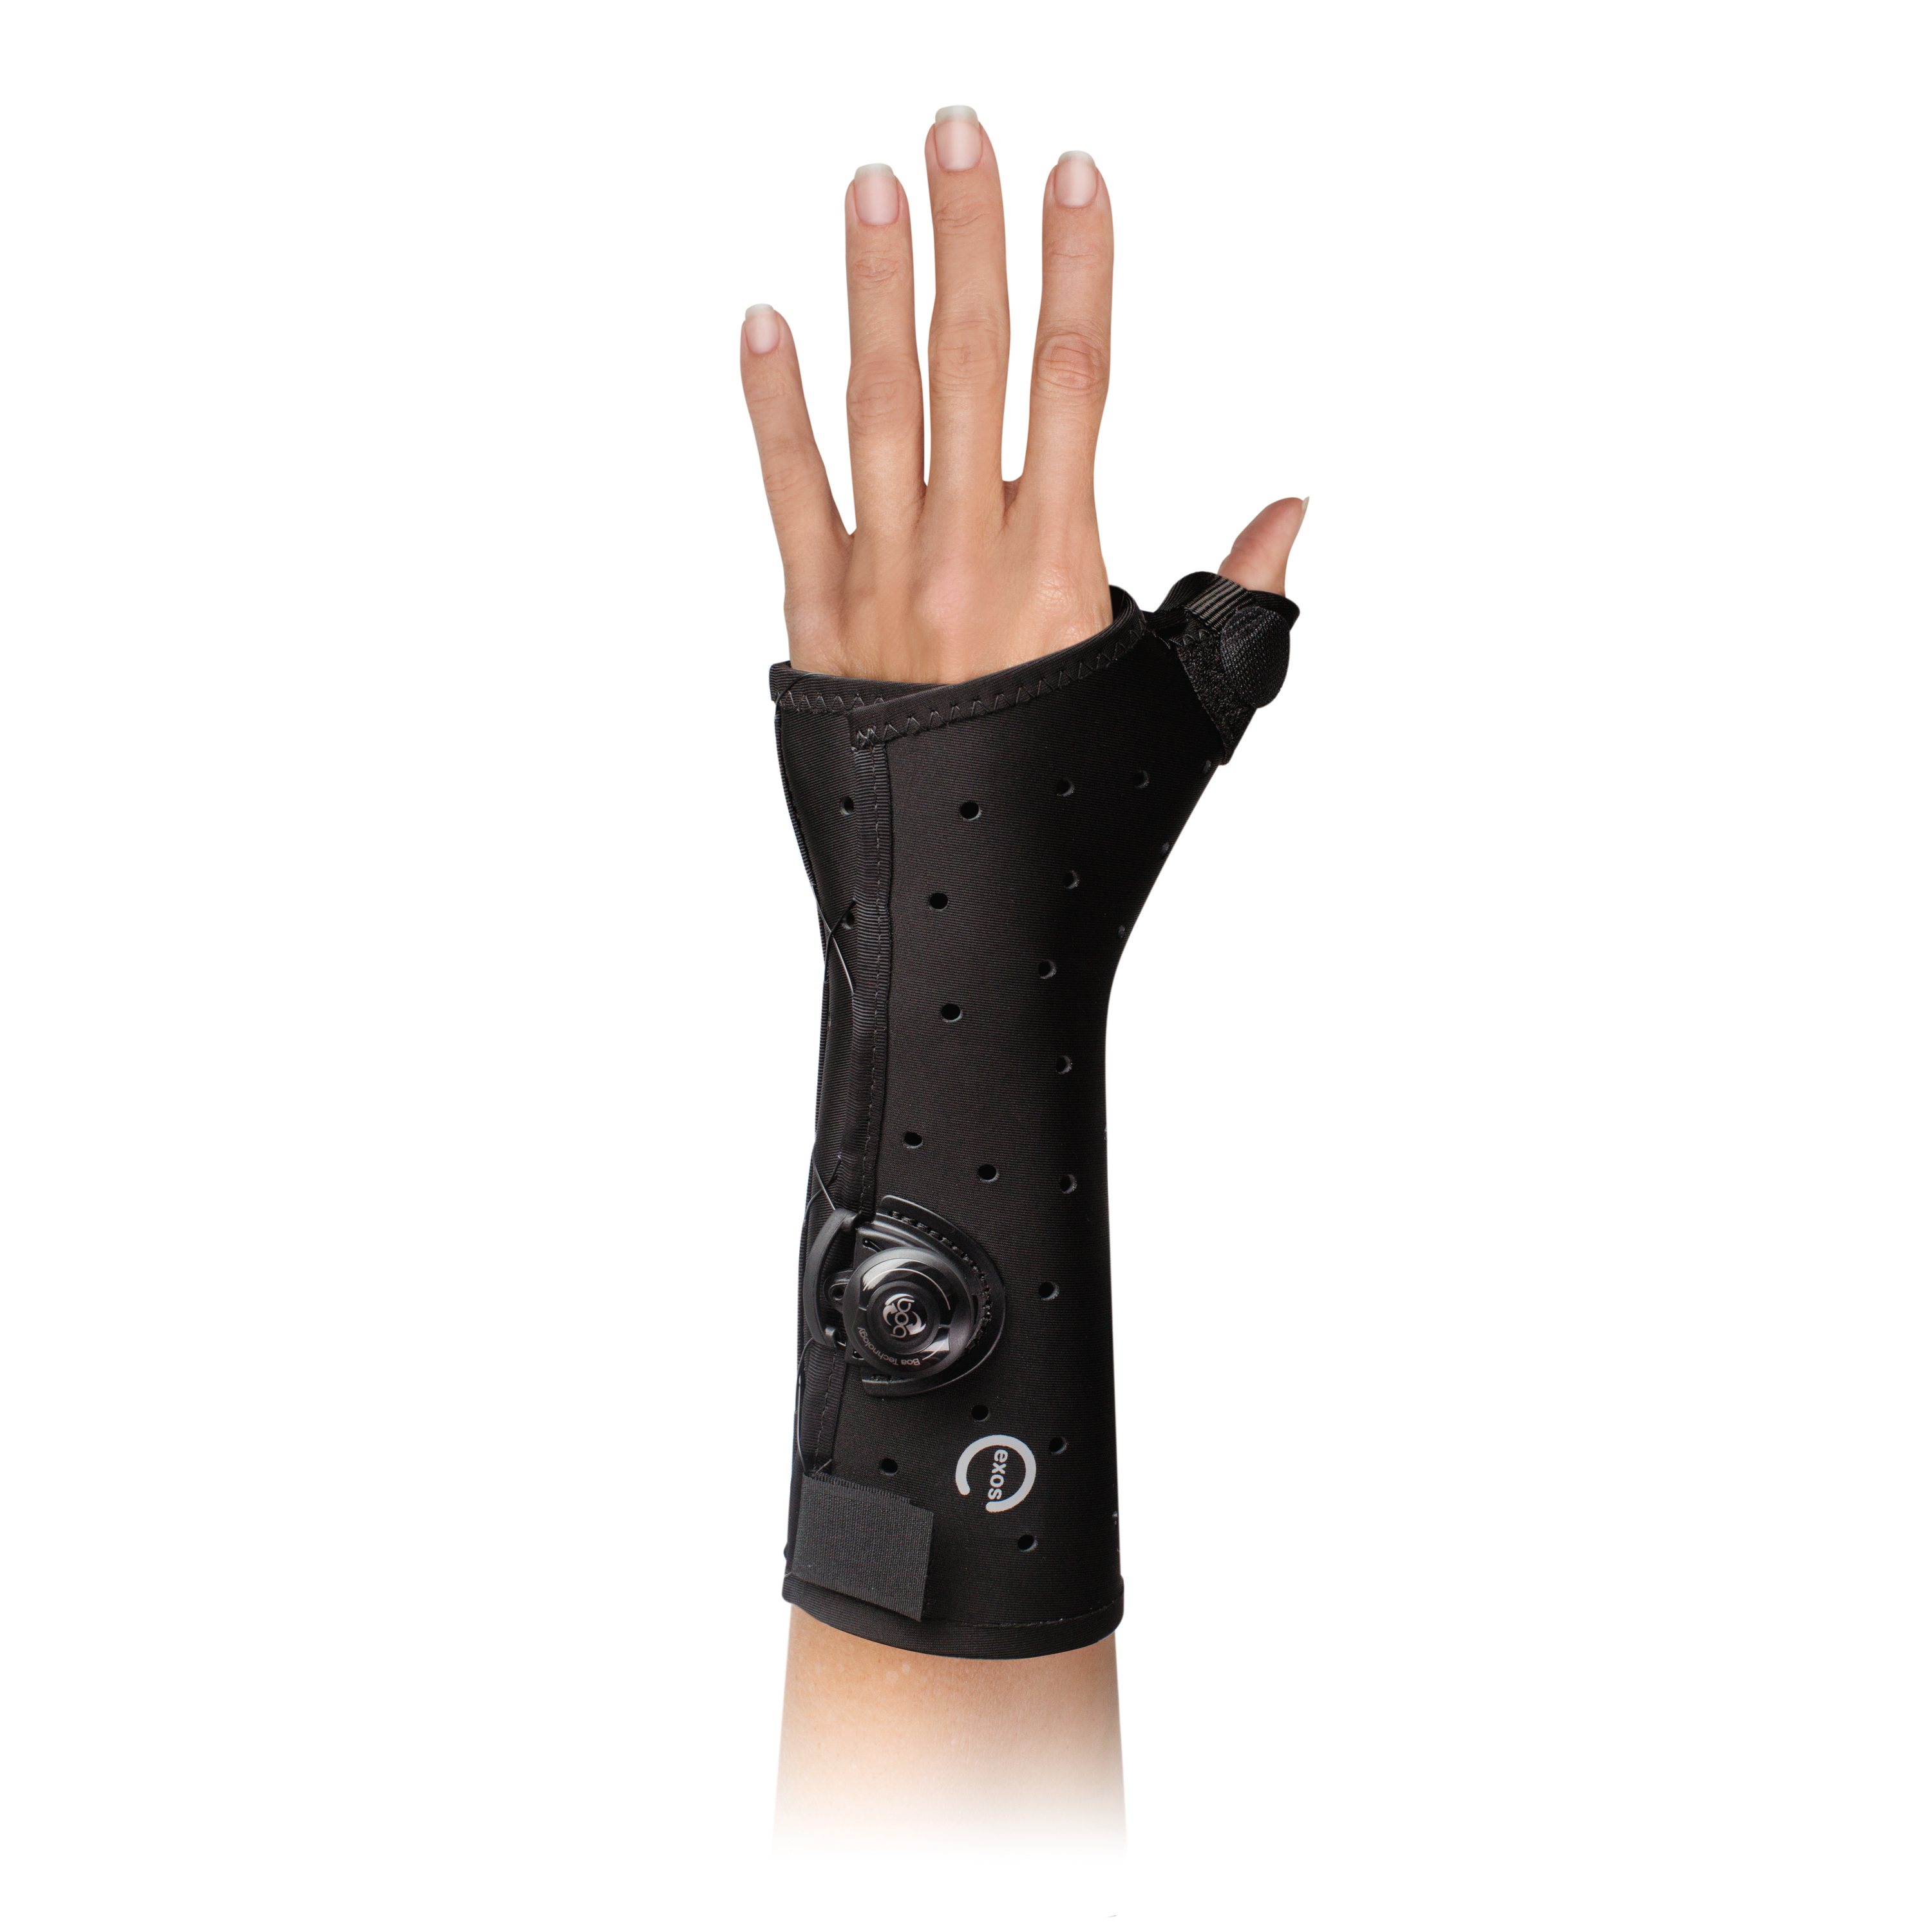 Produktbild EXOS® kurze Daumen-/Hand-/ Unterarmorthese II mit BOA®, Thermoplastisch verformbare Hand-/Unterarmorthese mit Daumeneinschluss zur Immobilisierung